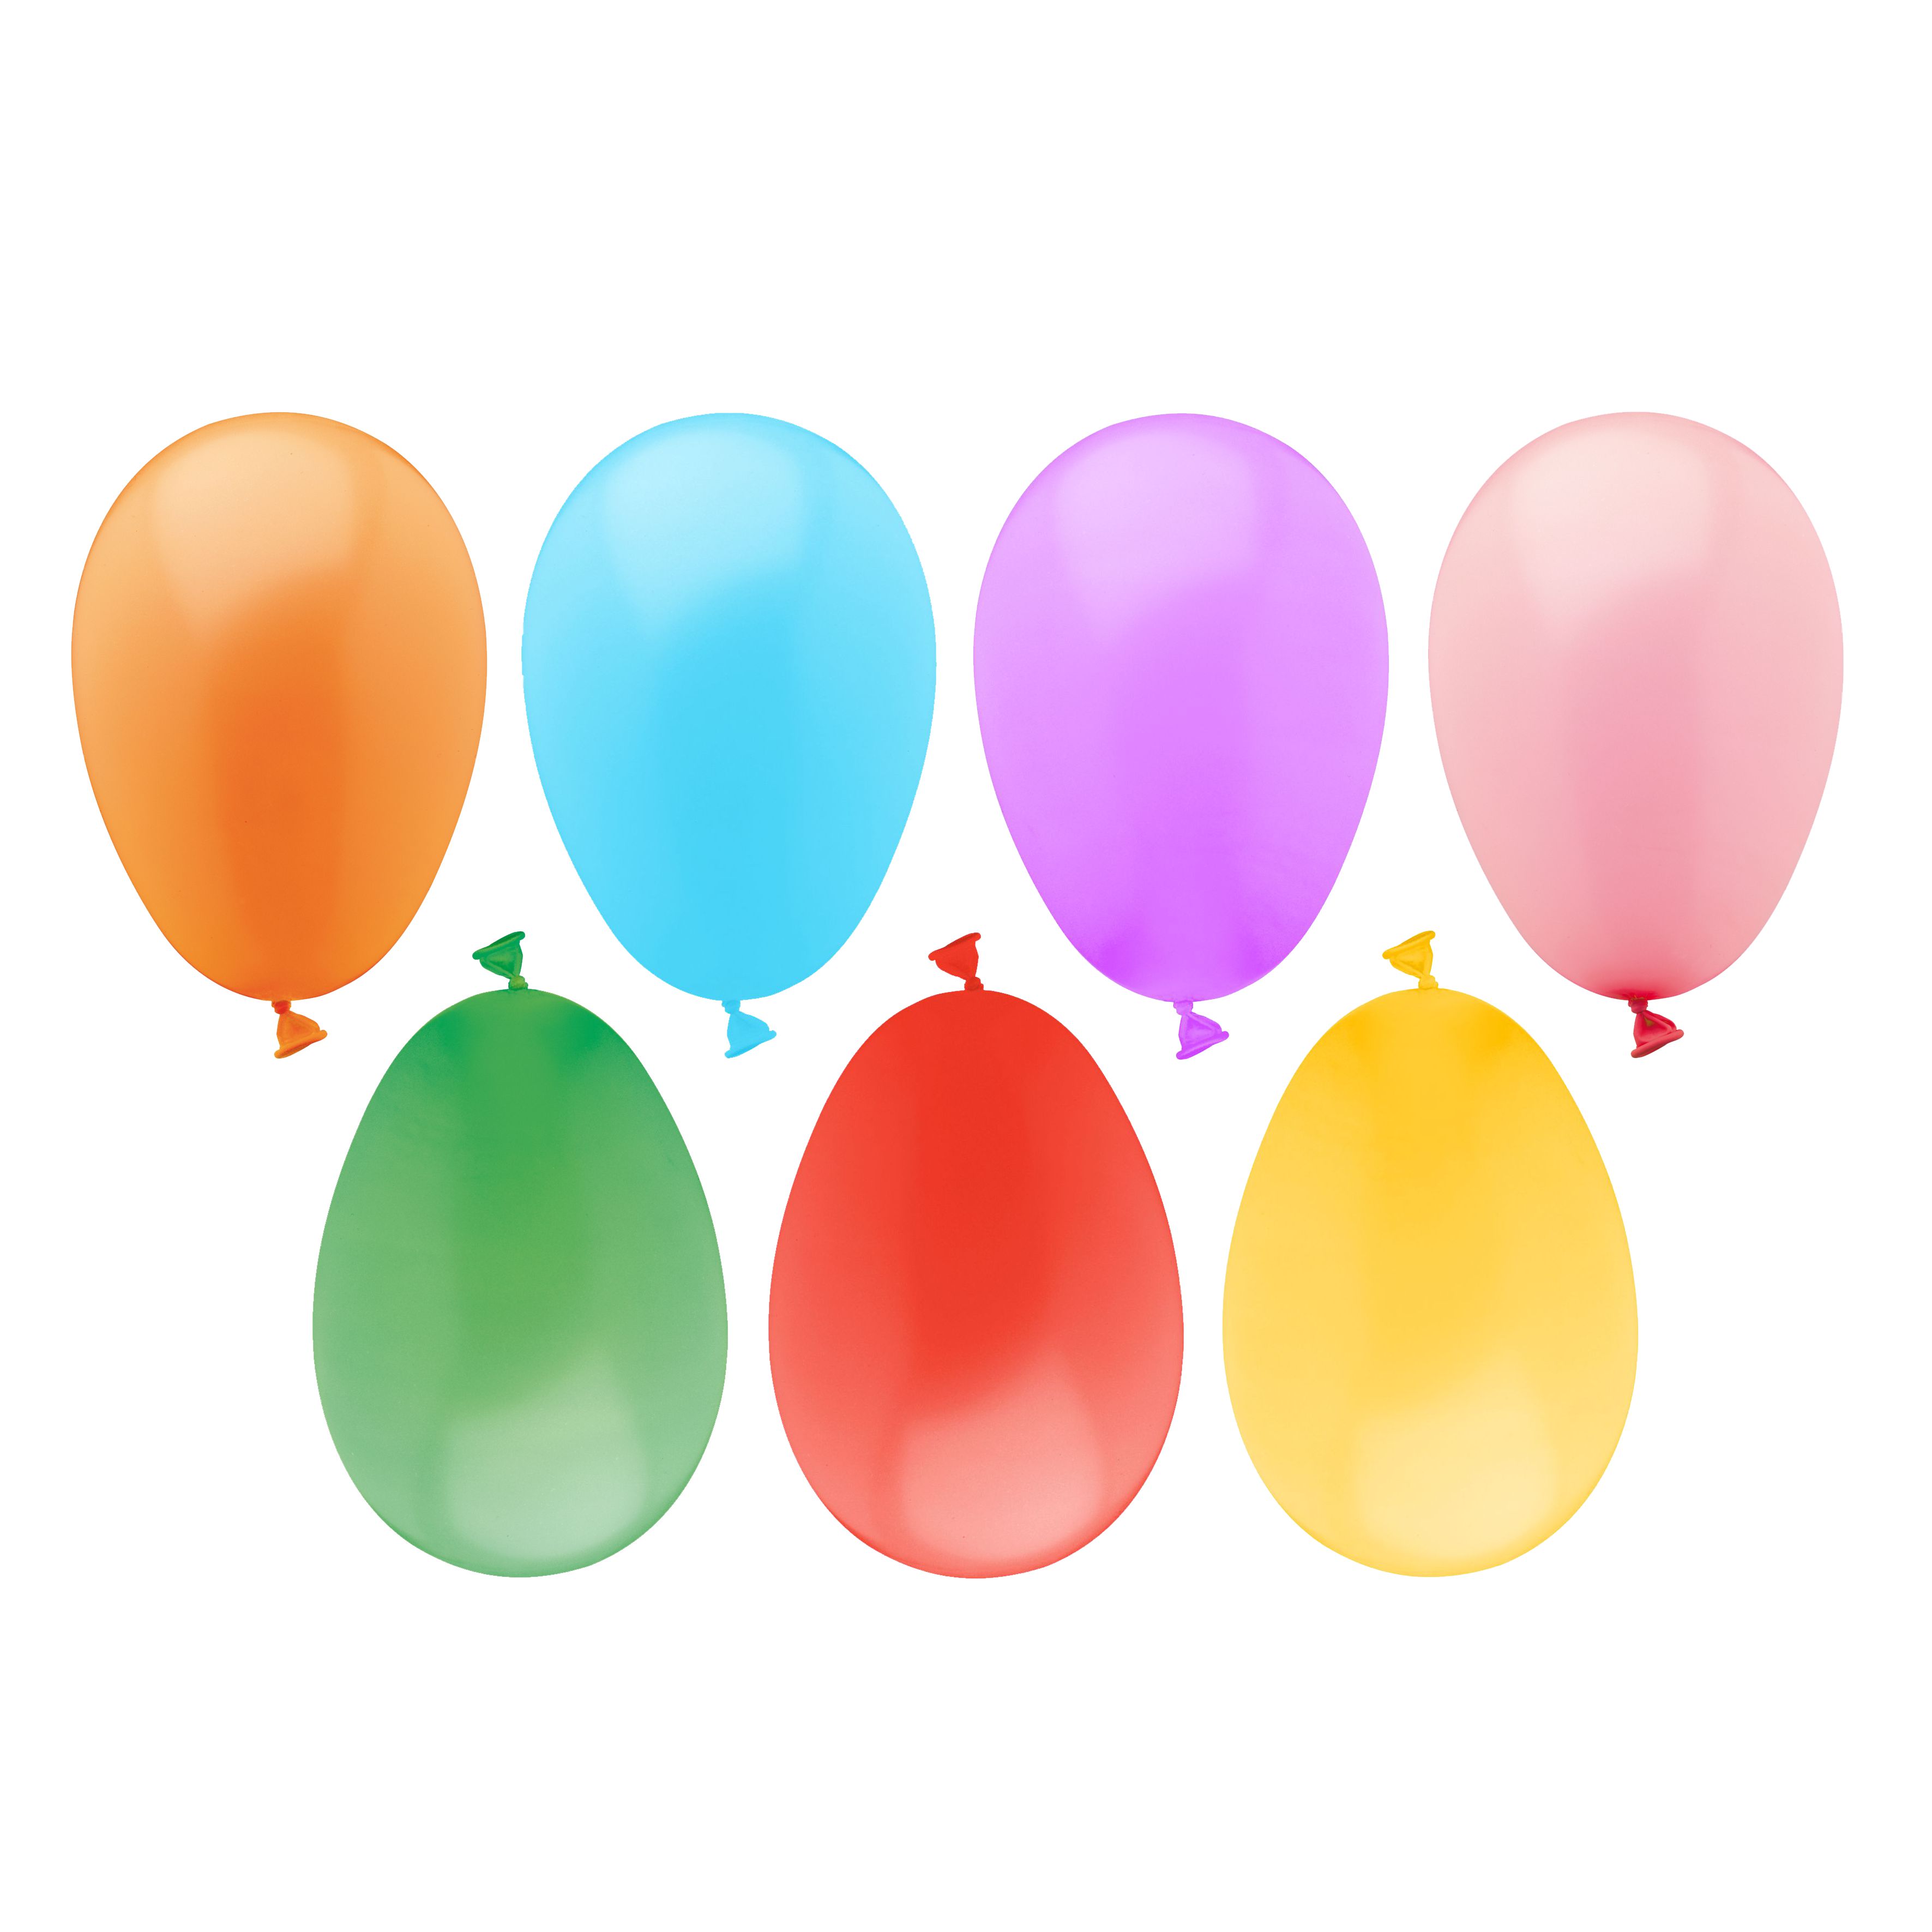 PAP STAR VERTRIEBSGESELLSCHAFT Luftballons 7,5 cm Wasserbomben 100st 